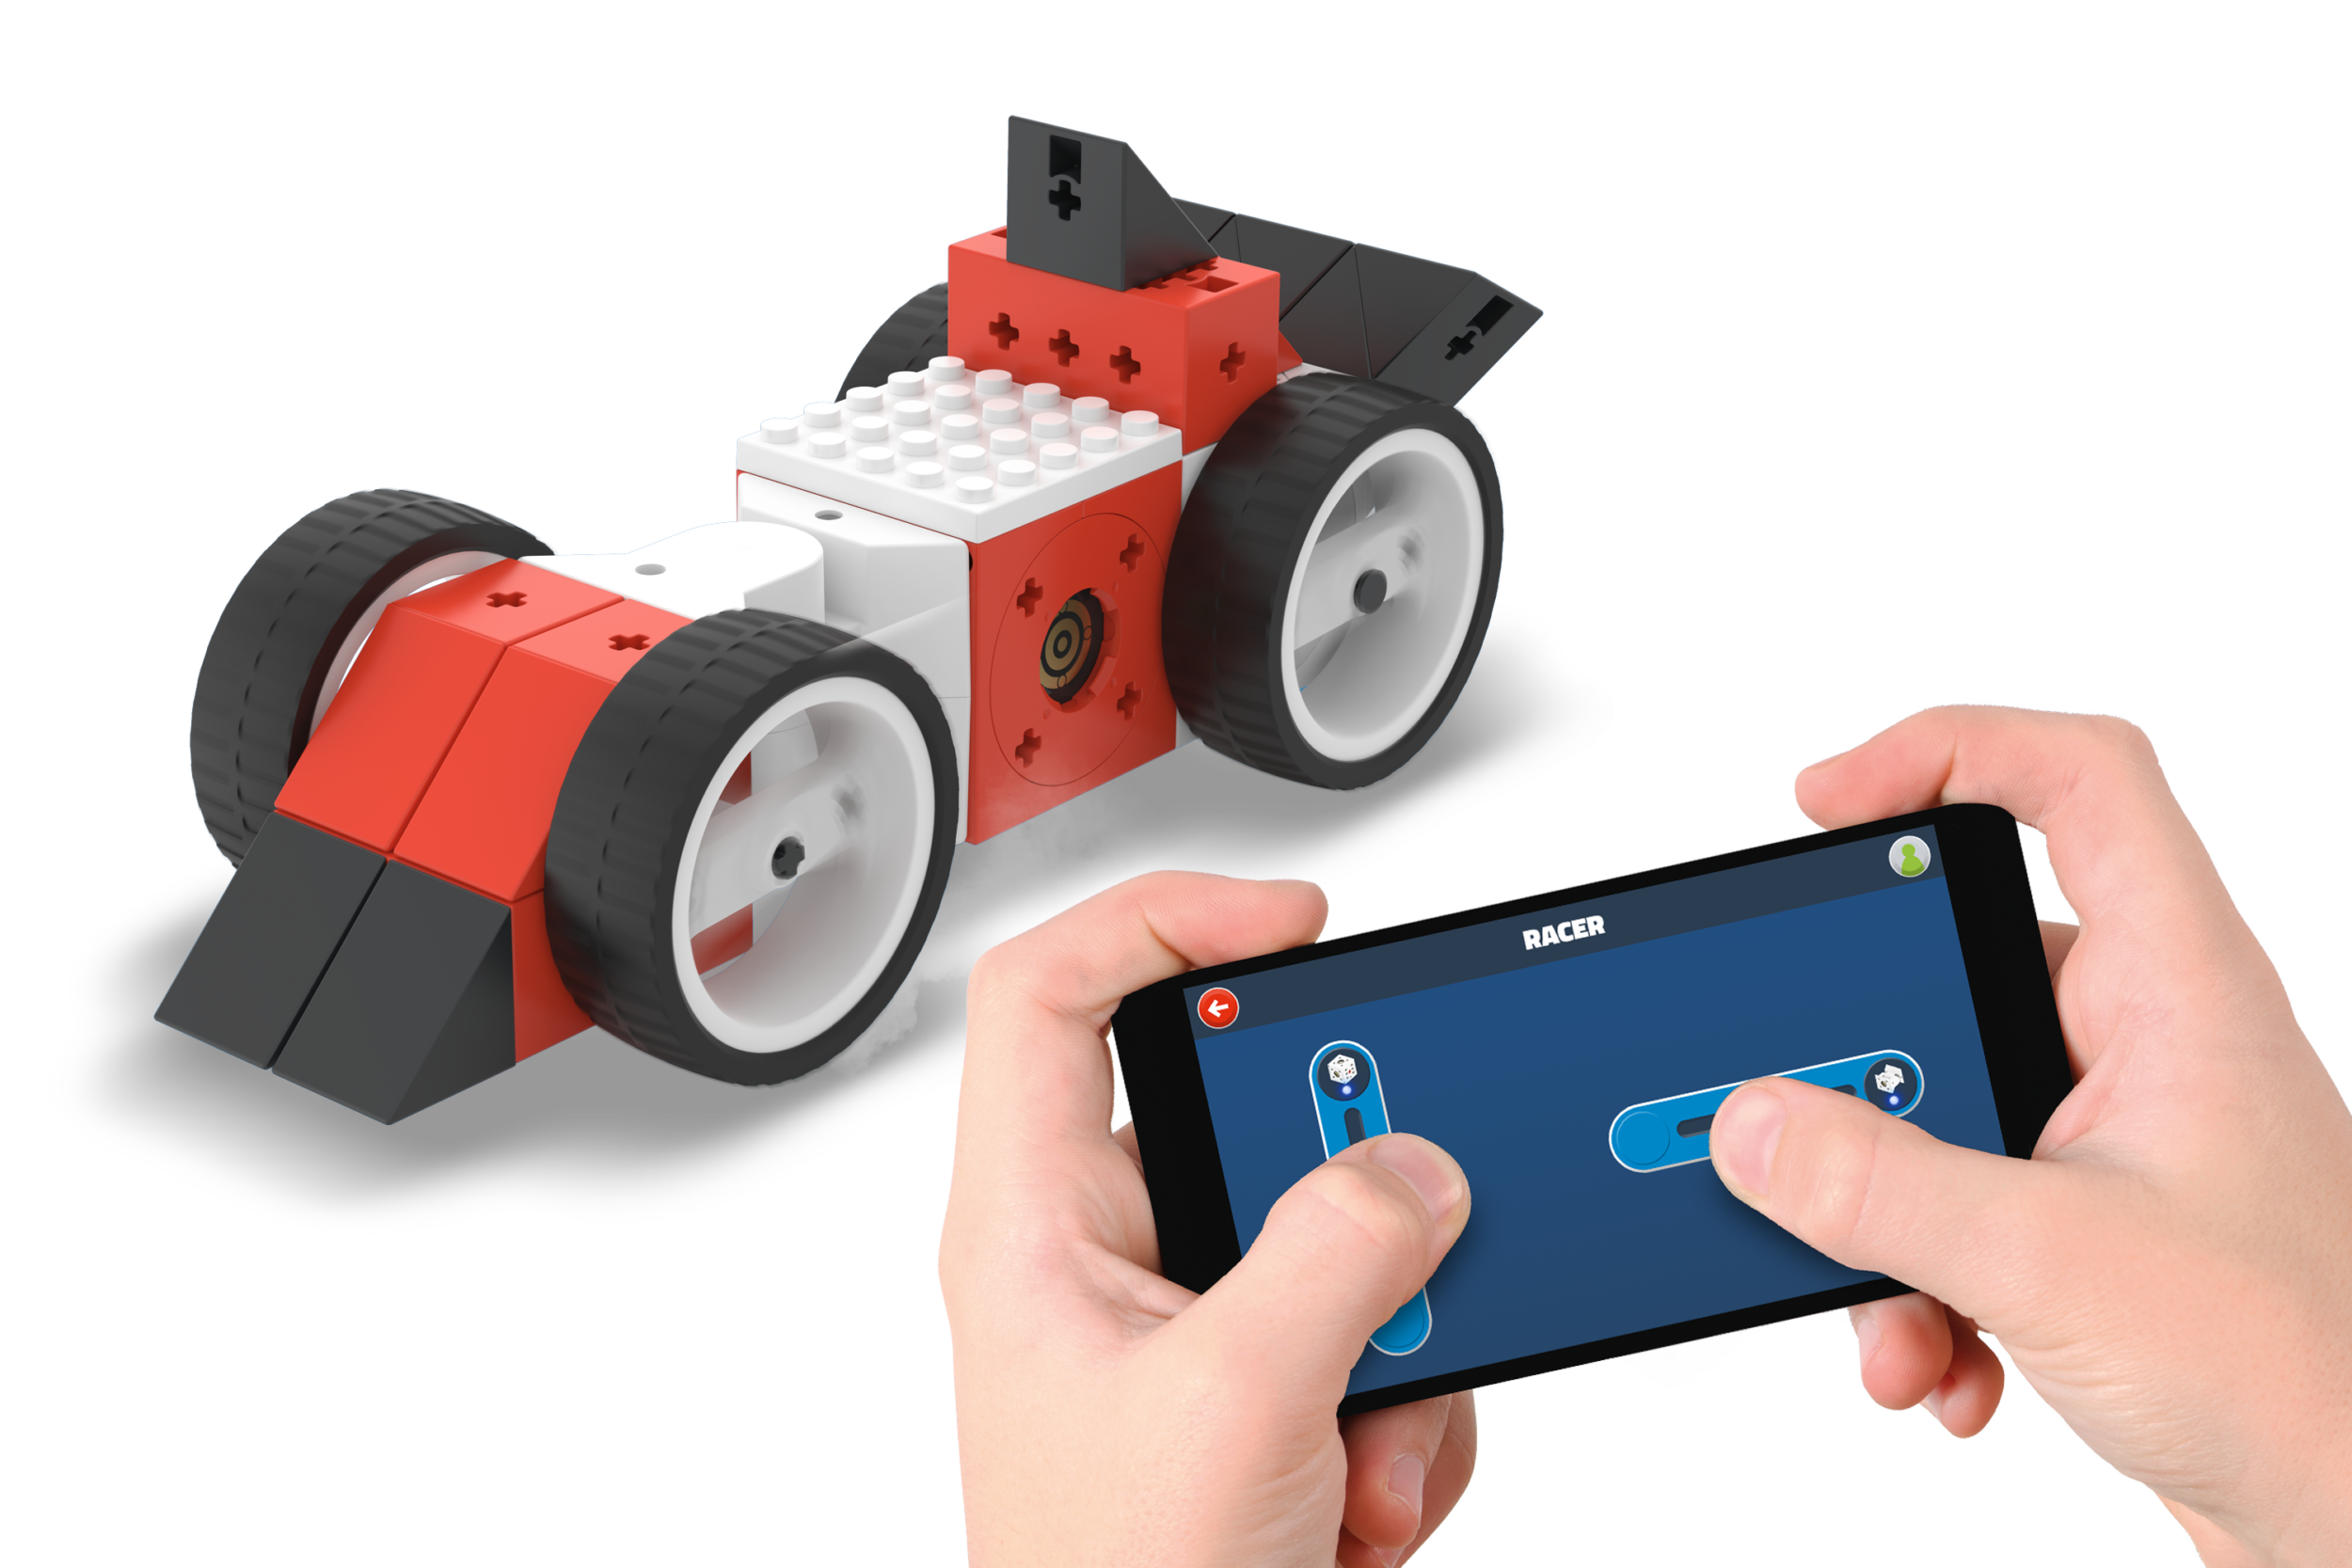 Mit Tinkerbots lässt sich der Wandel zu Industrie 4.0 und vernetzten Maschinen spielerisch nachvollziehen. (Bild: Kinematics GmbH)